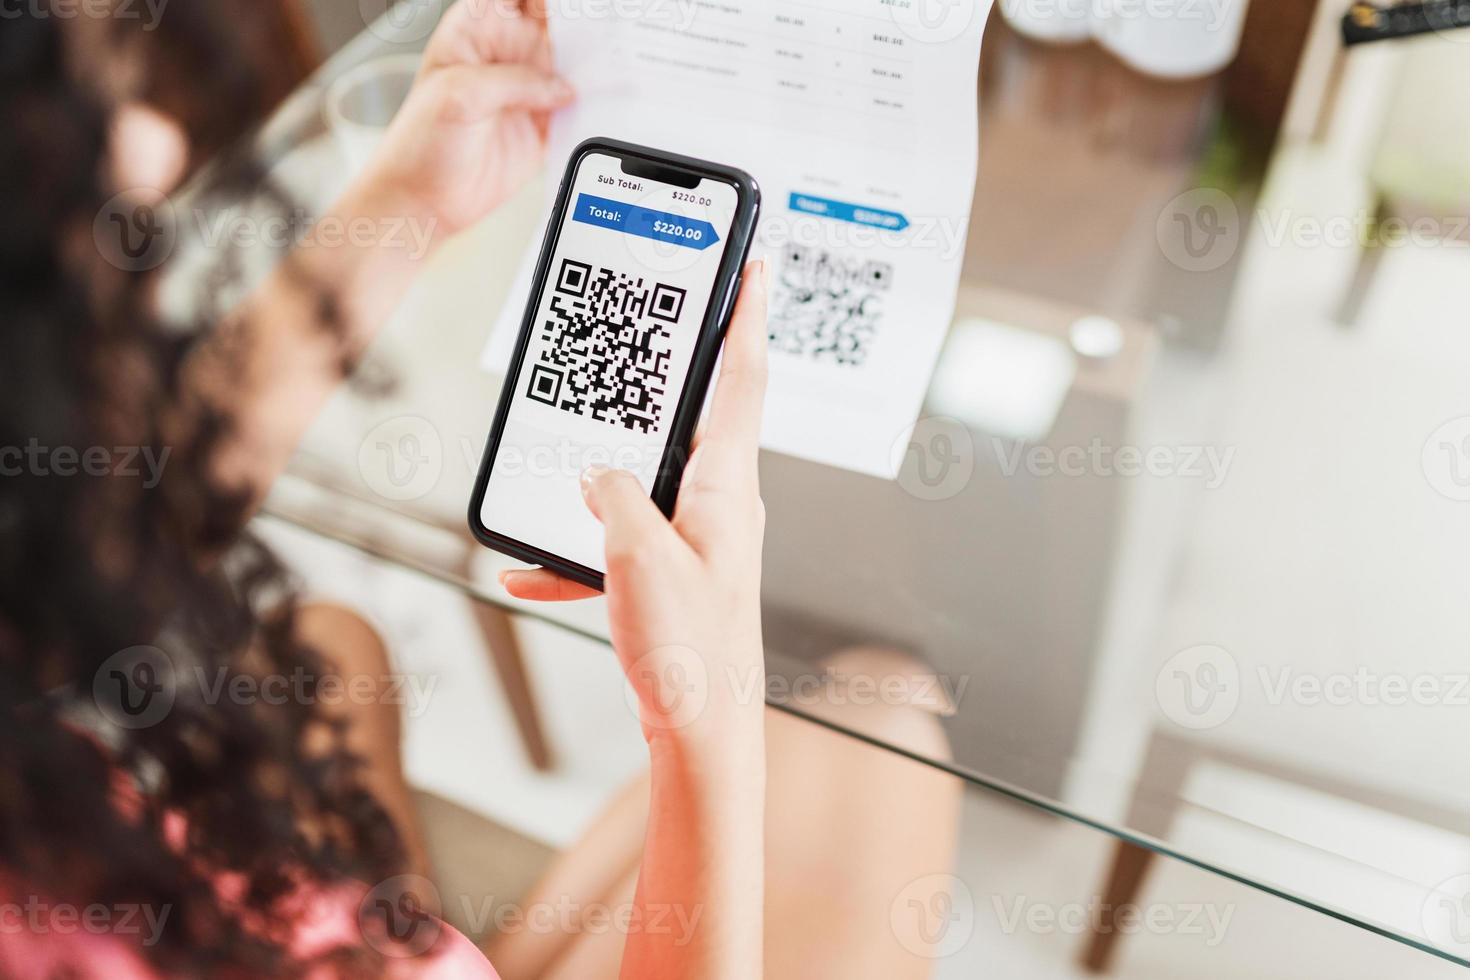 nouvelle forme de paiement des factures et des factures au brésil. femme tenant un téléphone portable avec application pix avec code qr, x gros plan de l'écran. photo